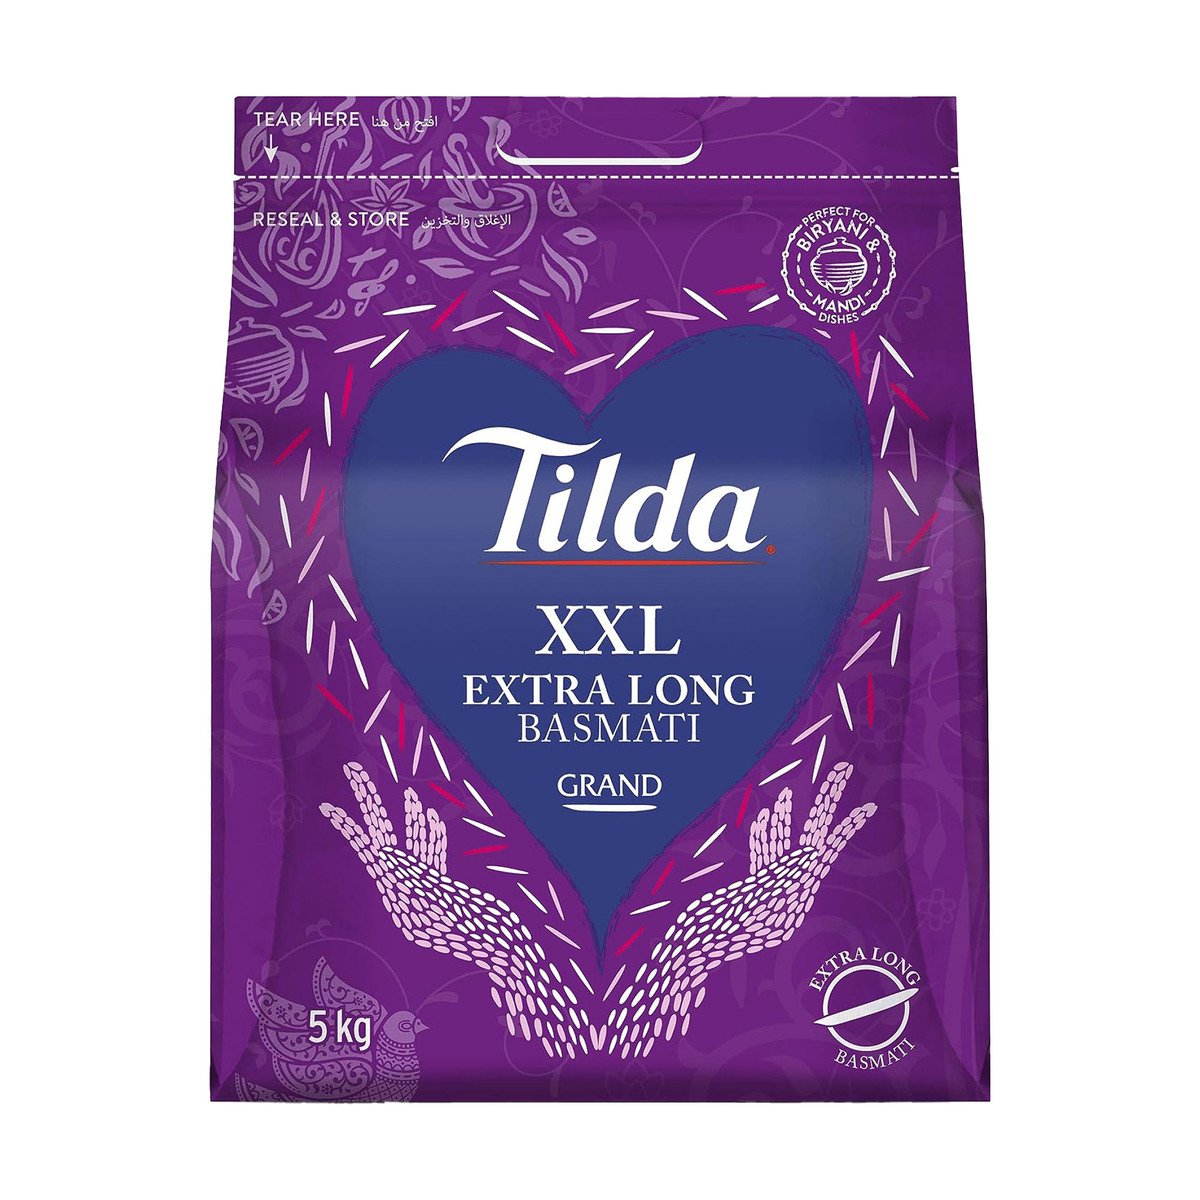 Buy Tilda Grand XXL Extra Long Basmati Rice 5 kg Online at Best Price | Basmati | Lulu UAE in Kuwait